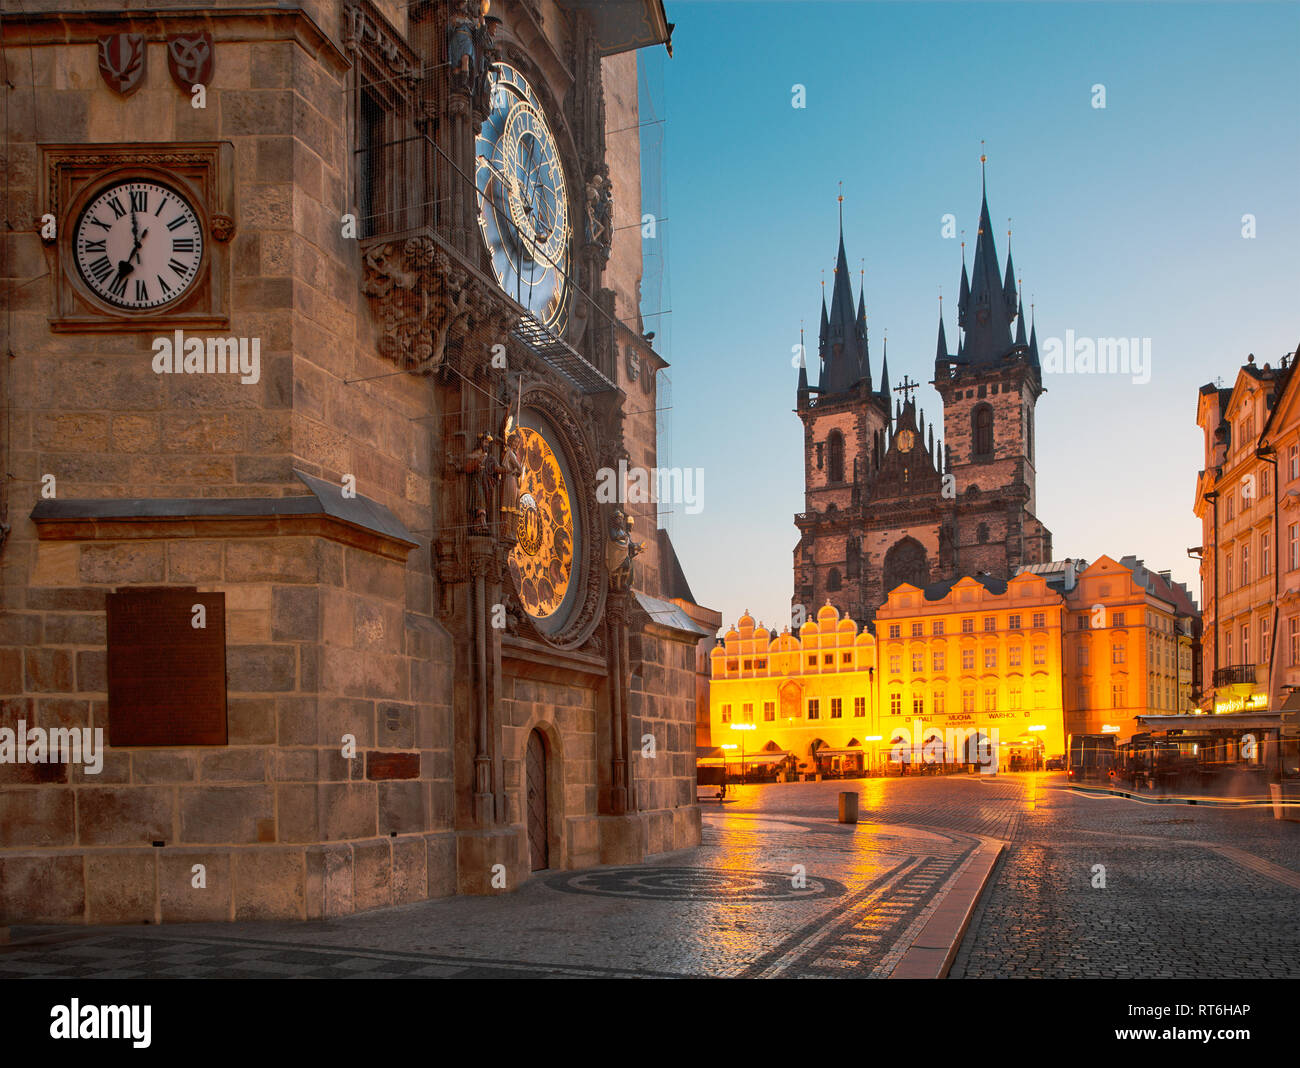 Praga, Repubblica Ceca - 16 ottobre 2018: l'Orloj sul vecchio municipio, Staromestske square e di Nostra Signora di Týn chiesa al crepuscolo. Foto Stock